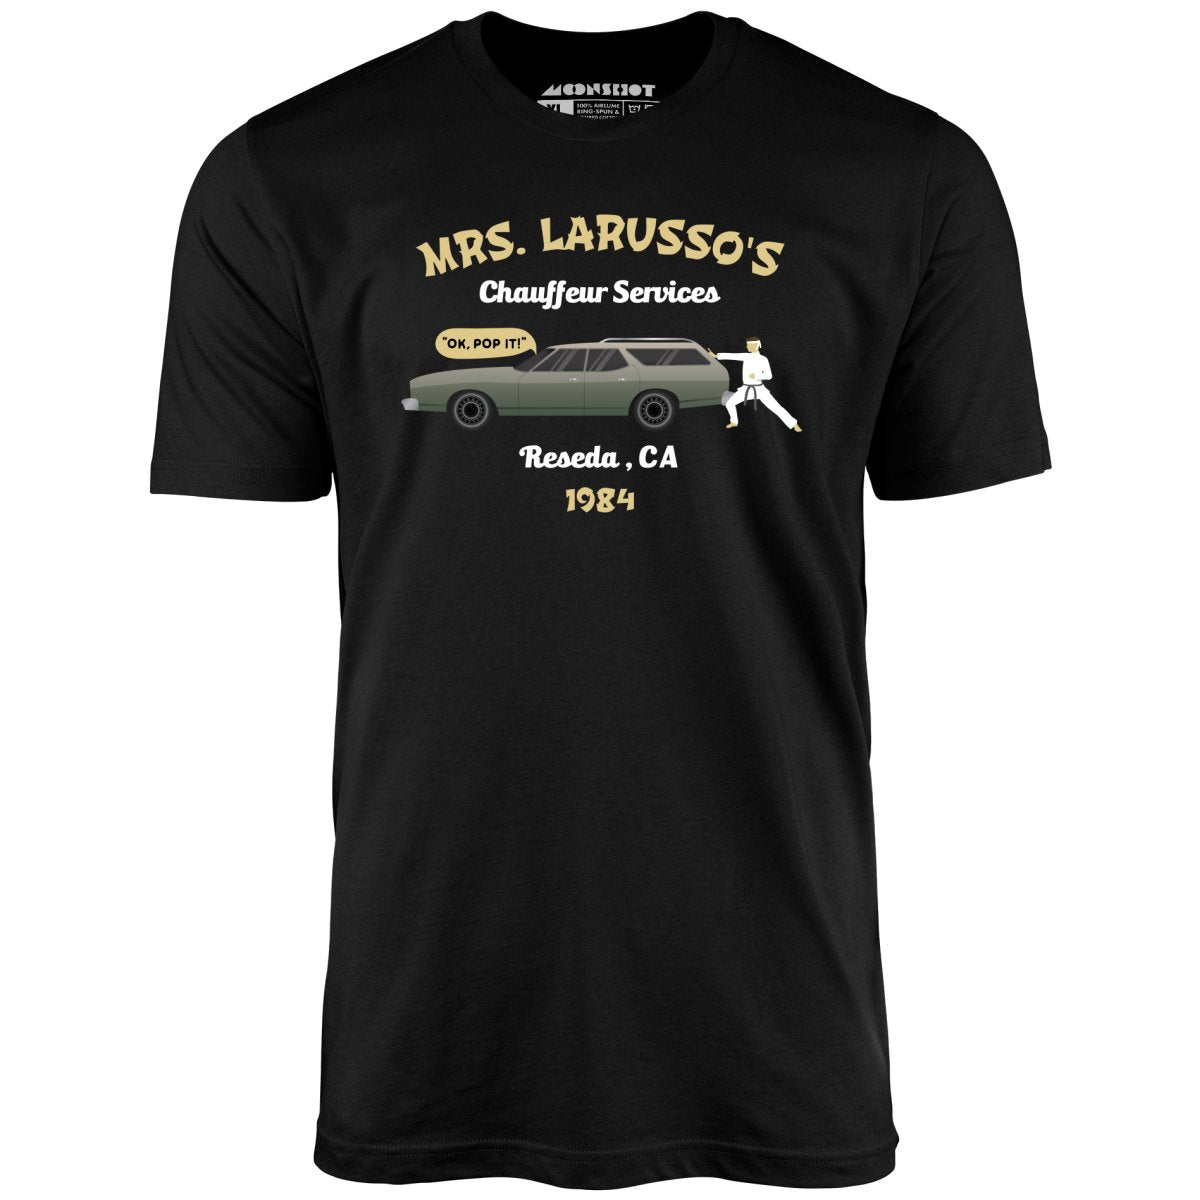 Mrs. Larusso's Chauffeur Services - Unisex T-Shirt